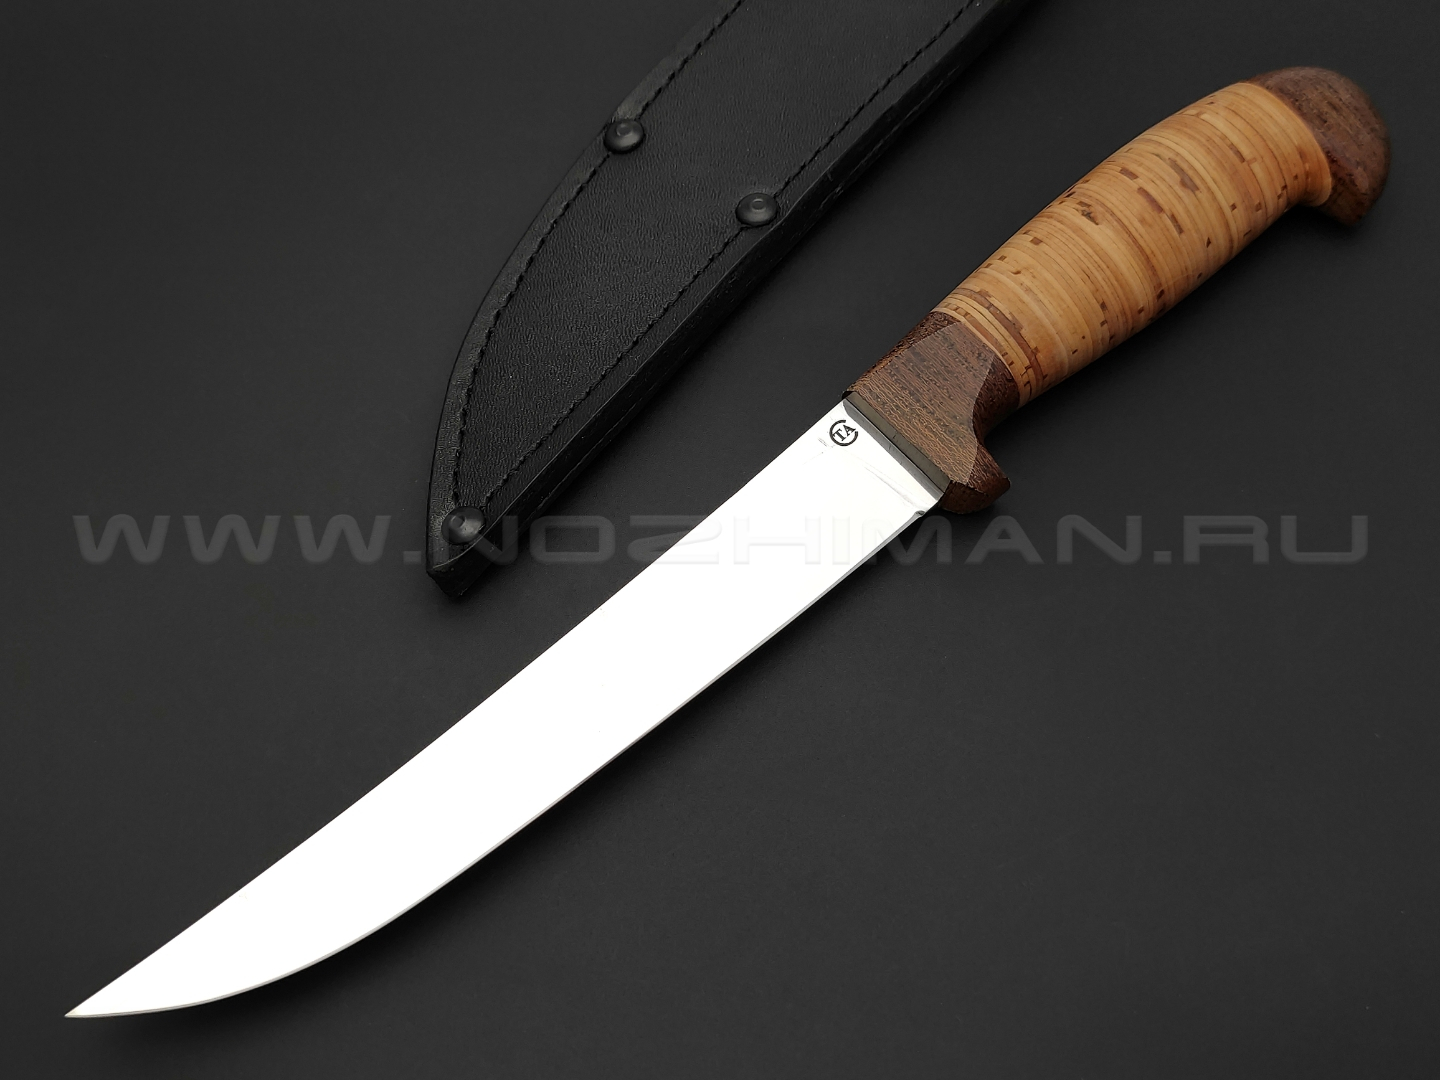 Филейный нож "Смак-2" сталь 95Х18, рукоять наборная береста (Титов & Солдатова)